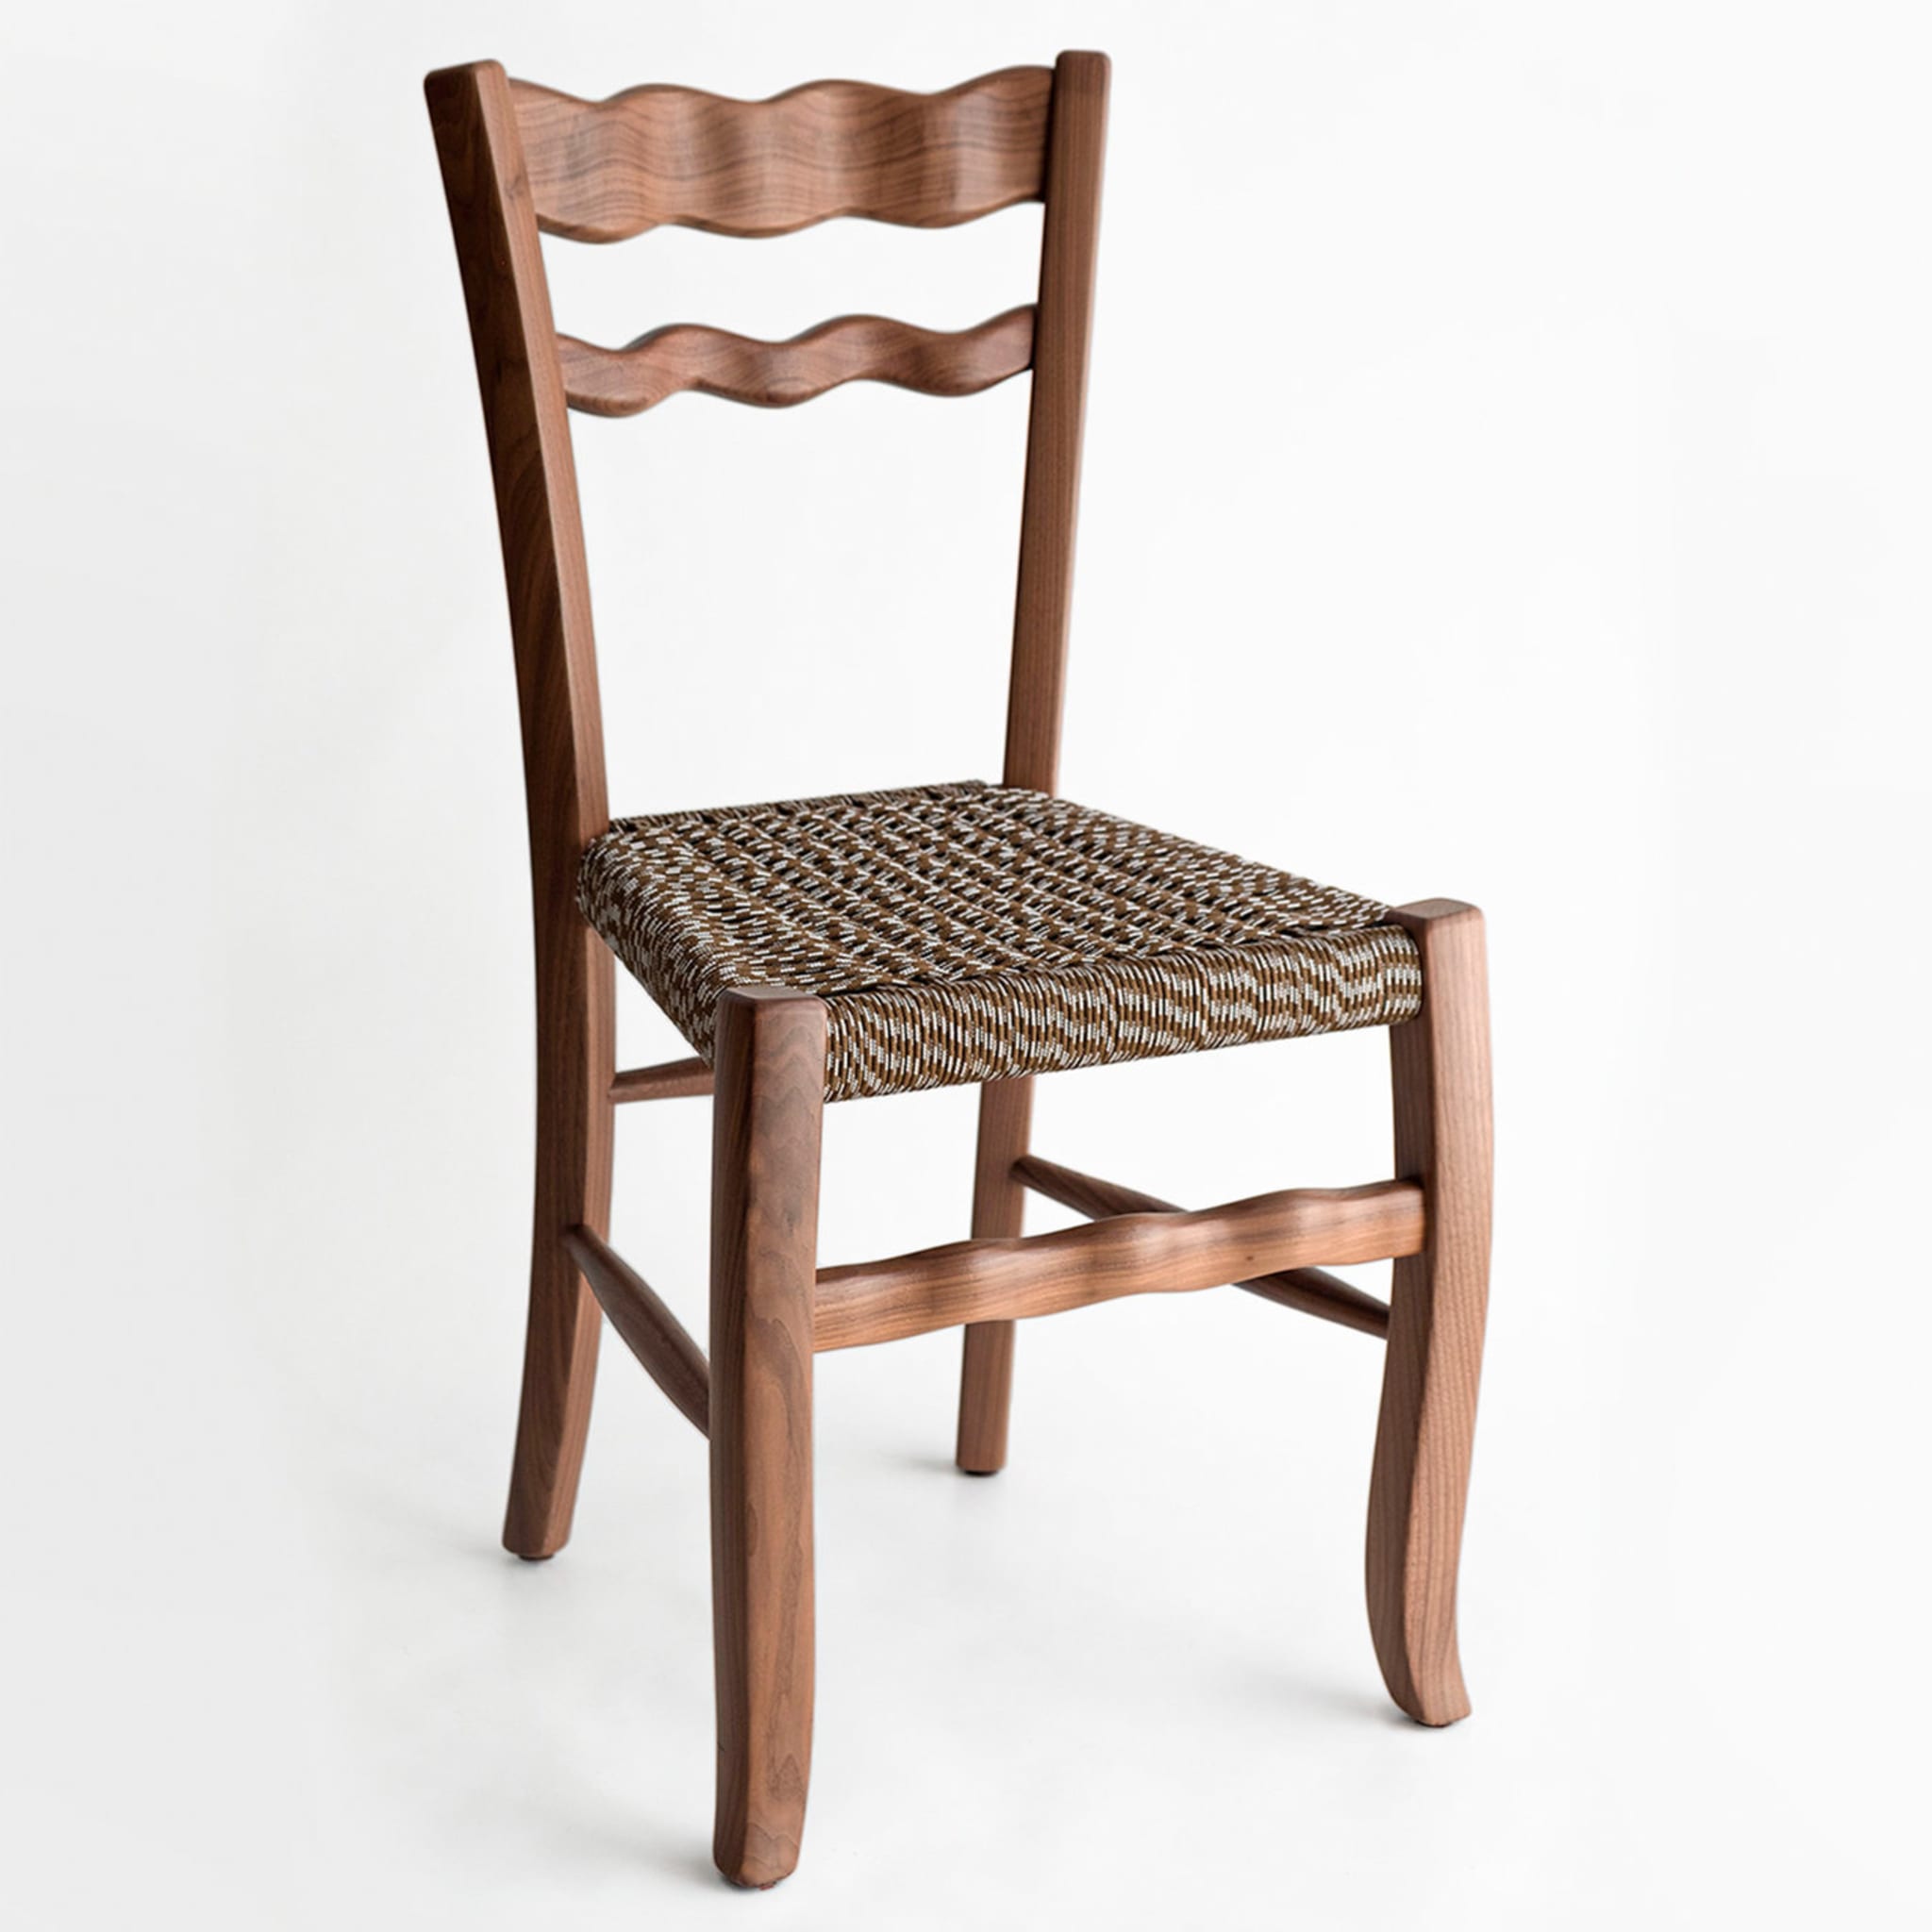 A Signurina Mora Chair by Antonio Aricò - Alternative view 1